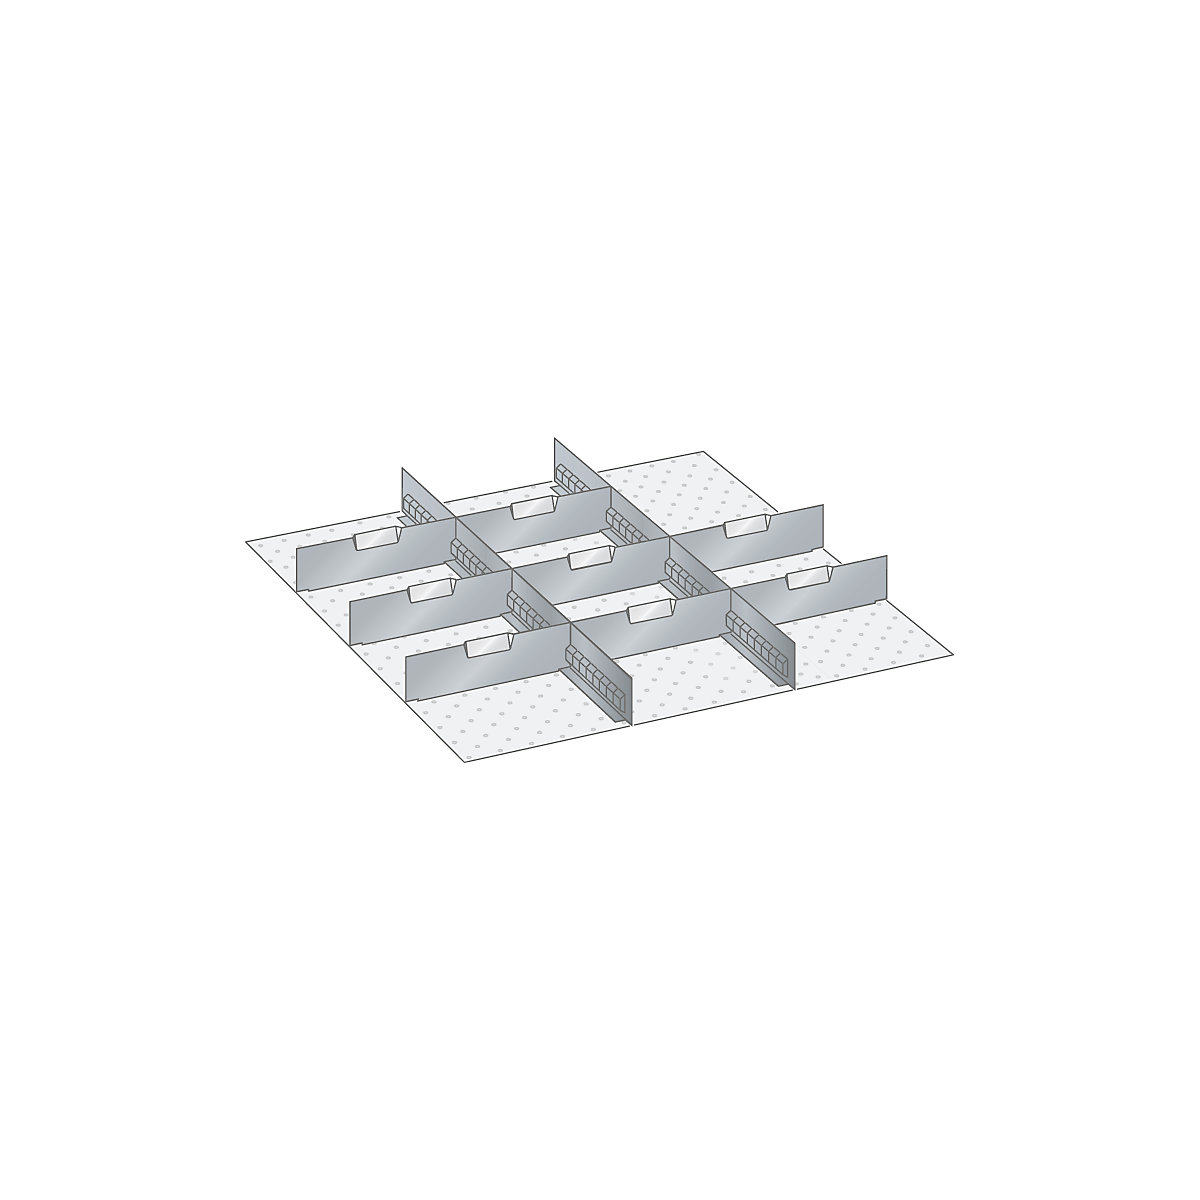 Materiaalset voor lade-indelingen – LISTA, 2 sleufwanden en 8 scheidingsschotten, 10-delig, voor fronthoogte 150 mm-4